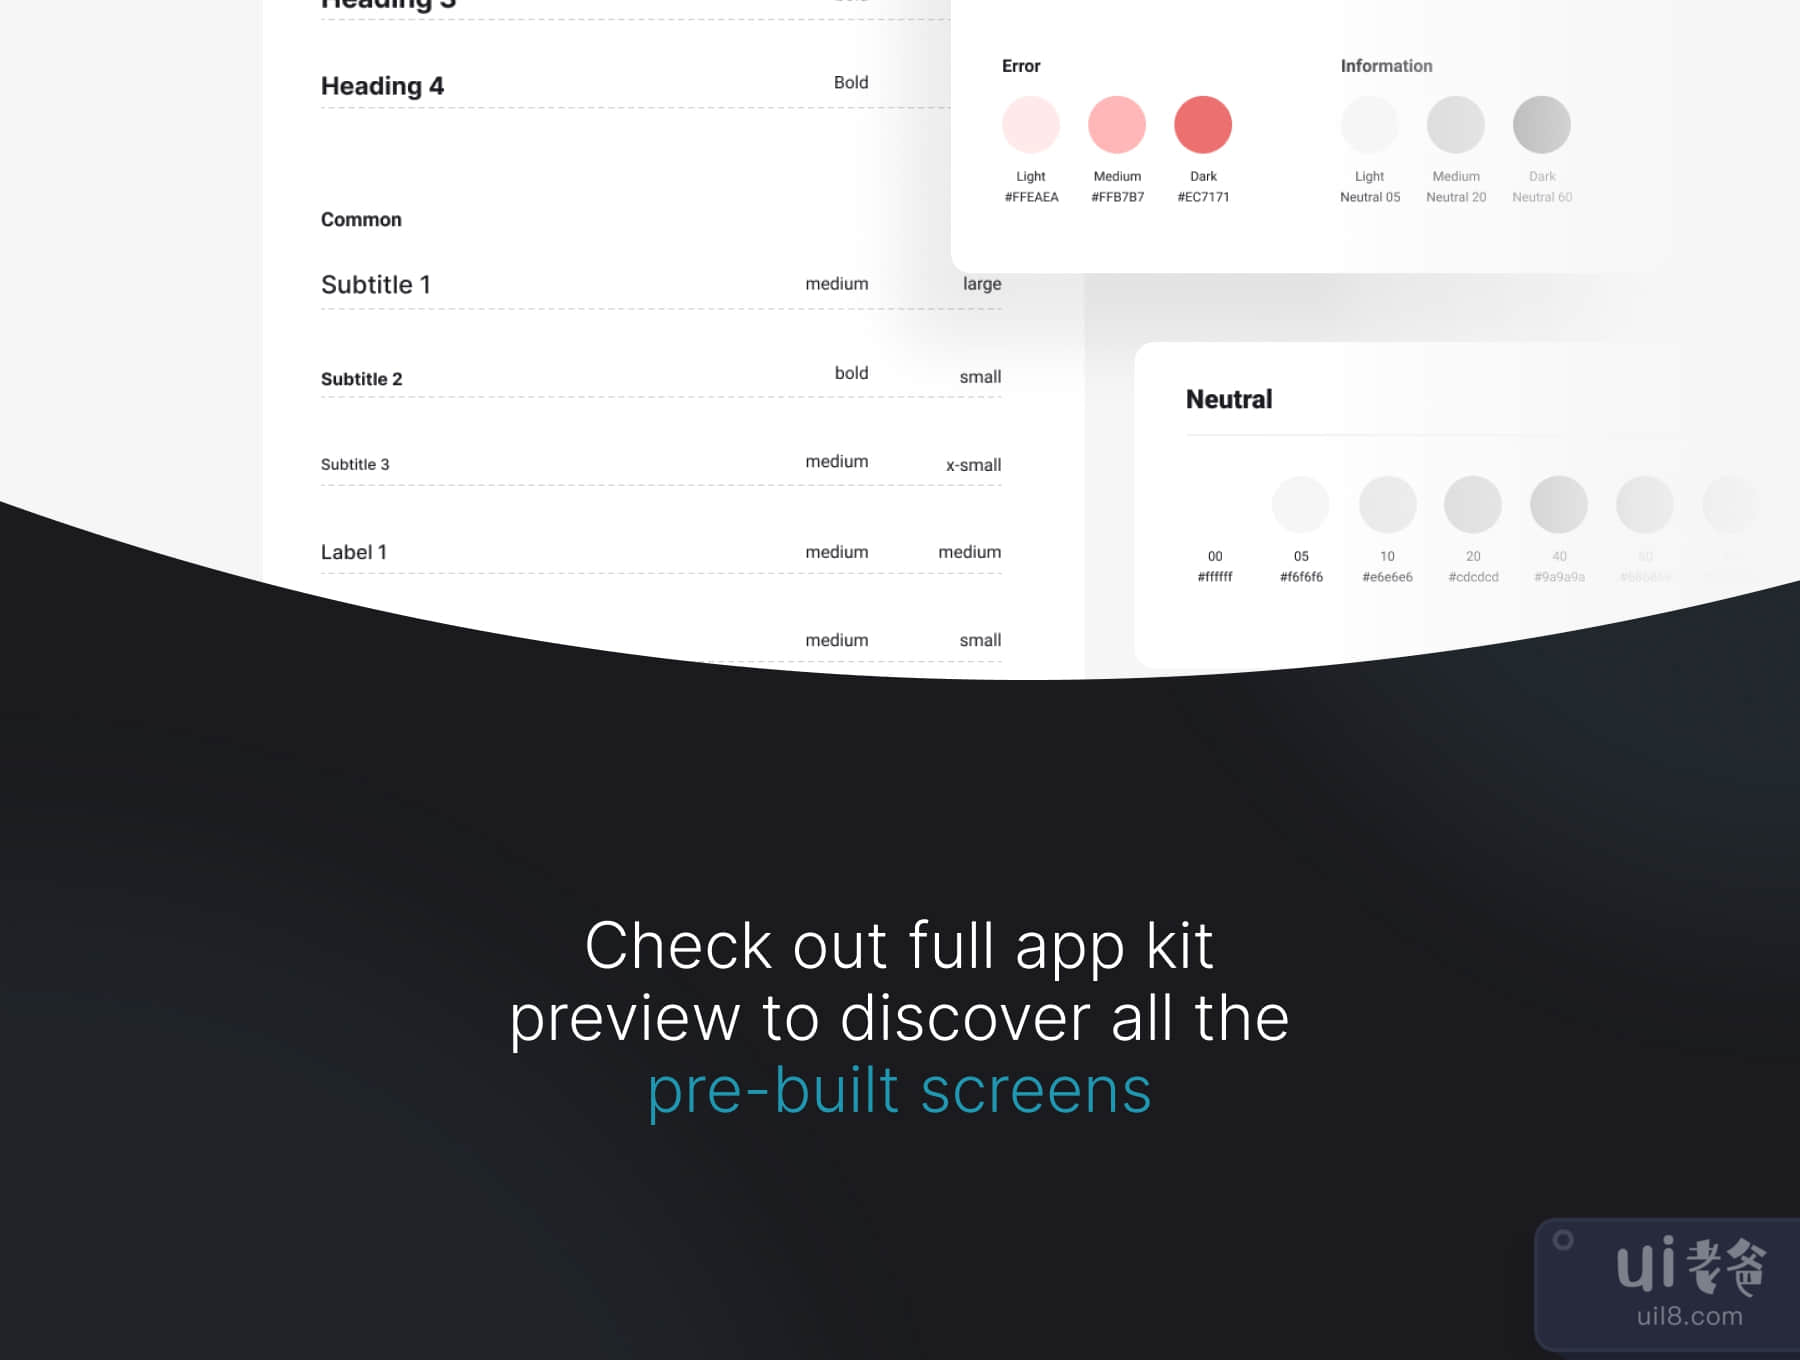 霍利 - 预订应用程序UI套件 (Holi · Booking App UI Kit)插图6